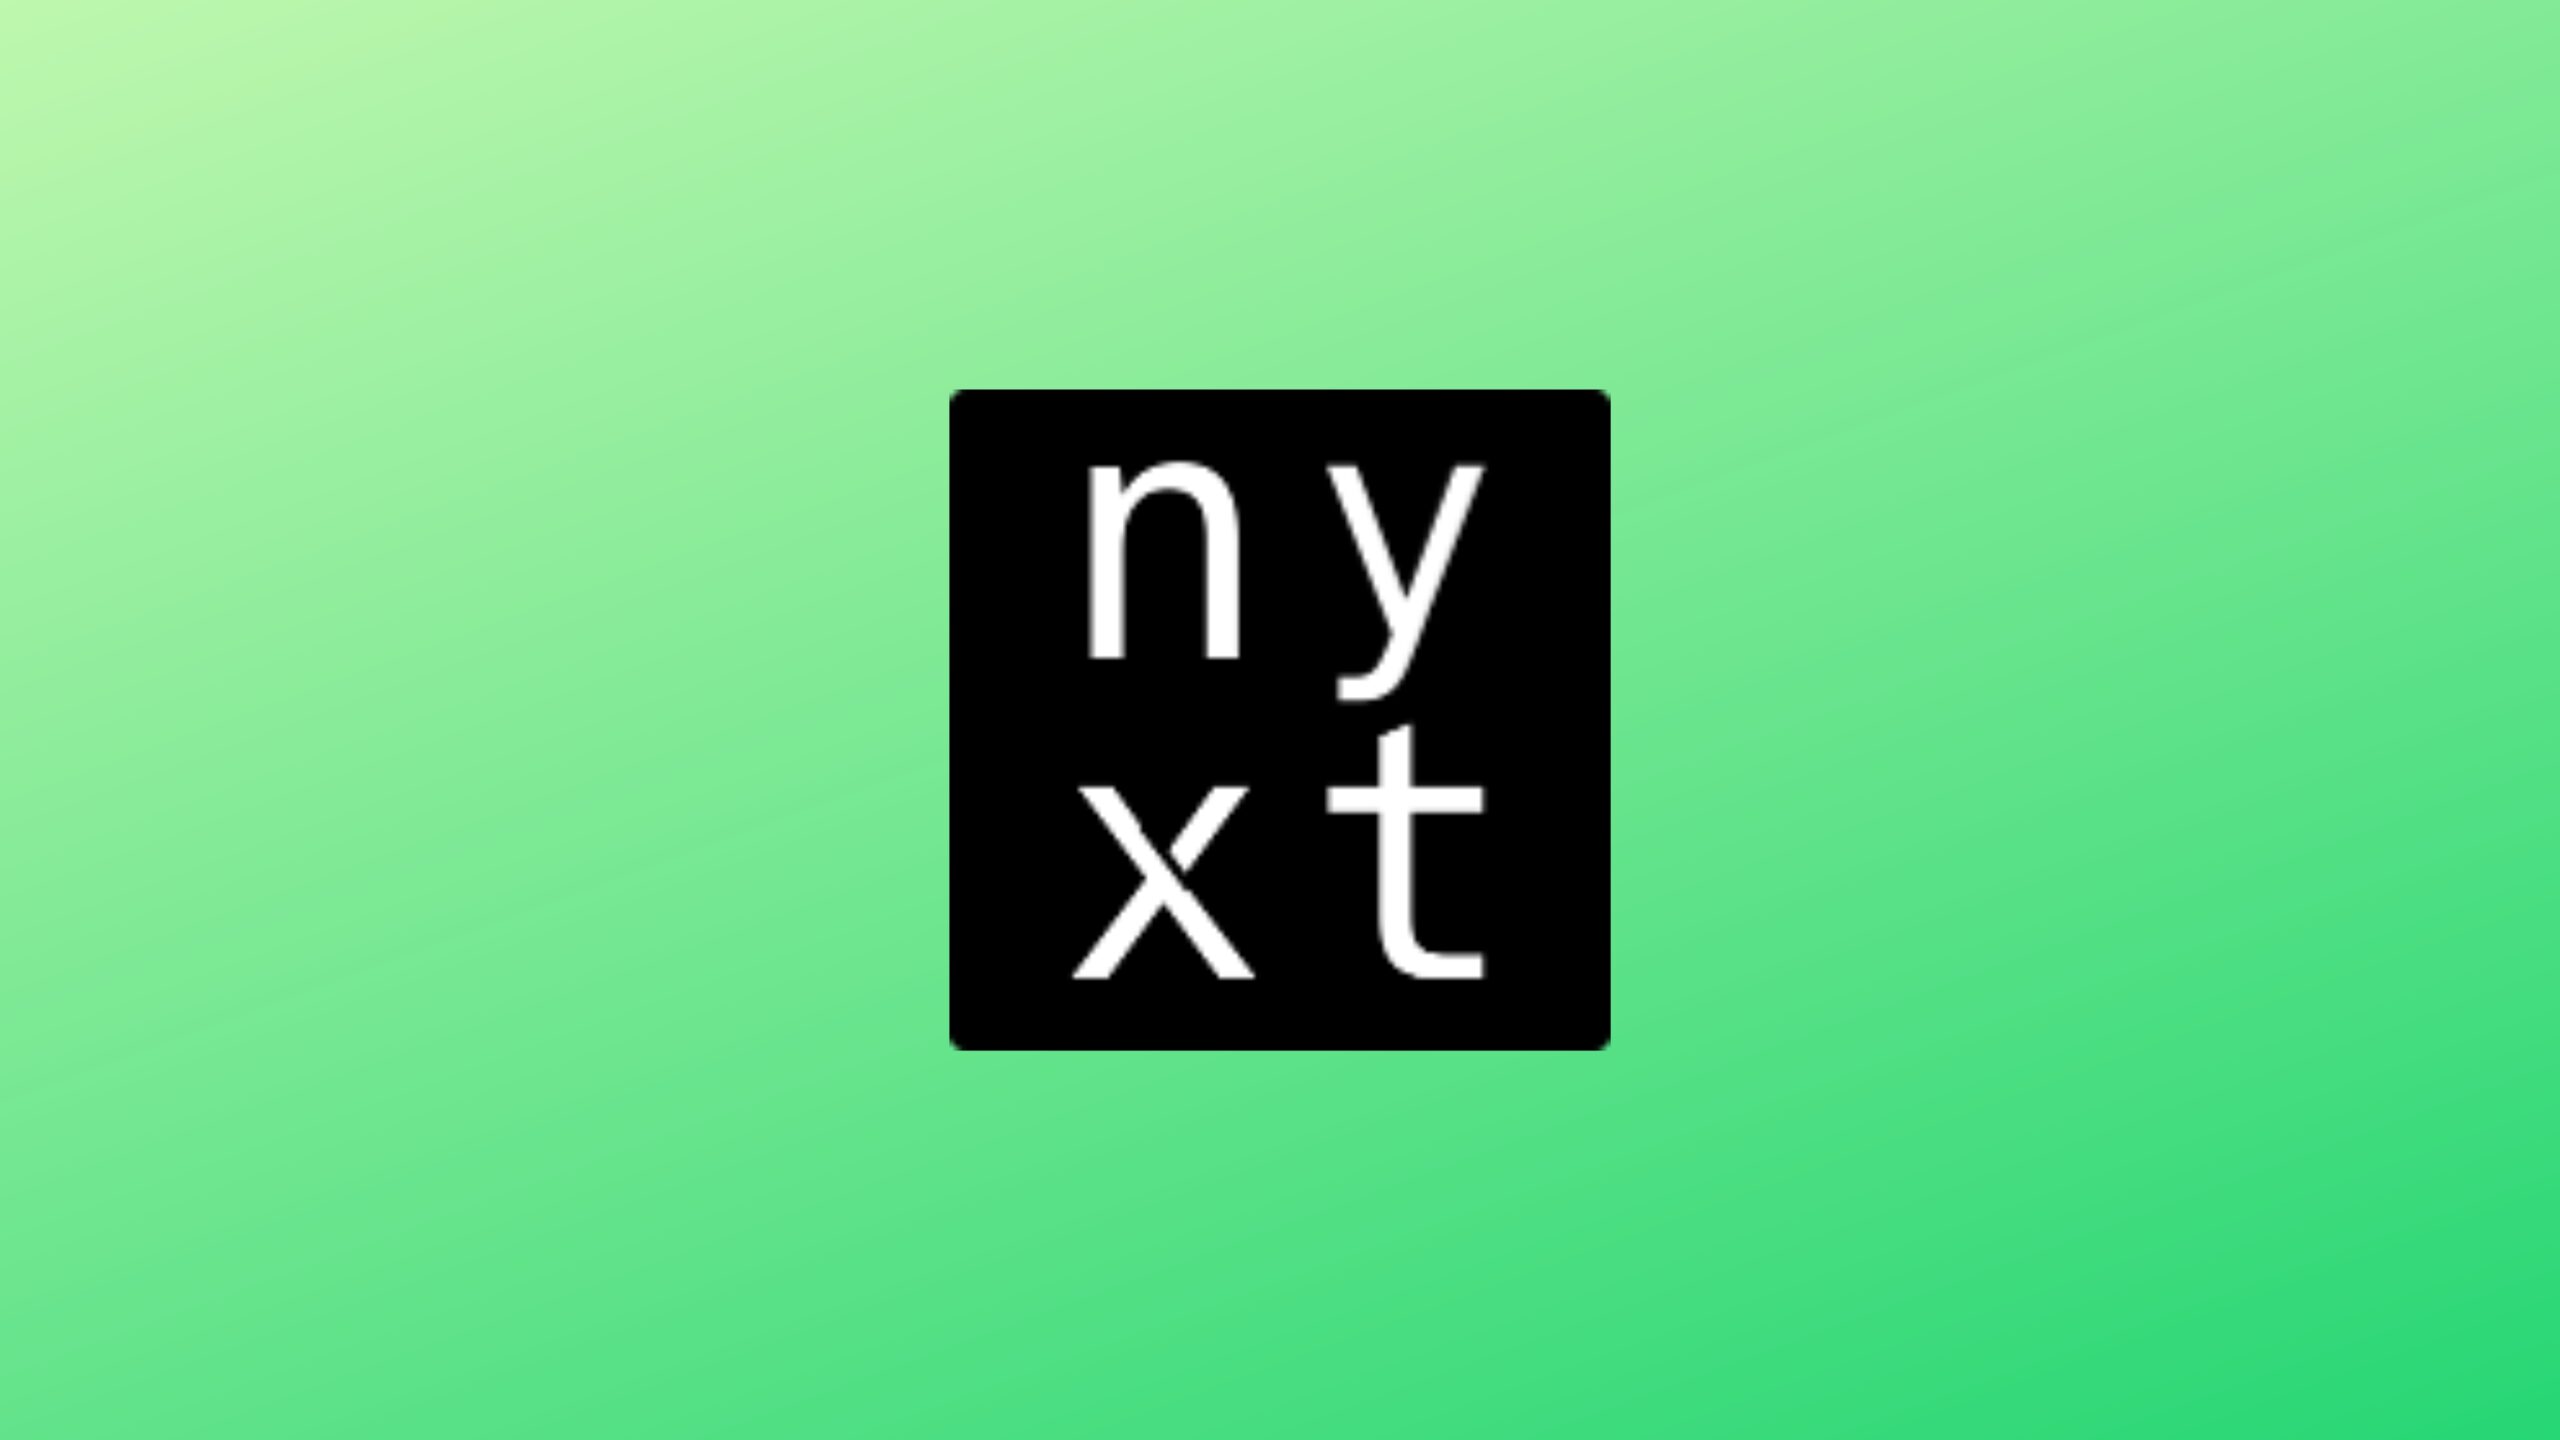 como-instalar-o-navegador-nyxt-no-linux